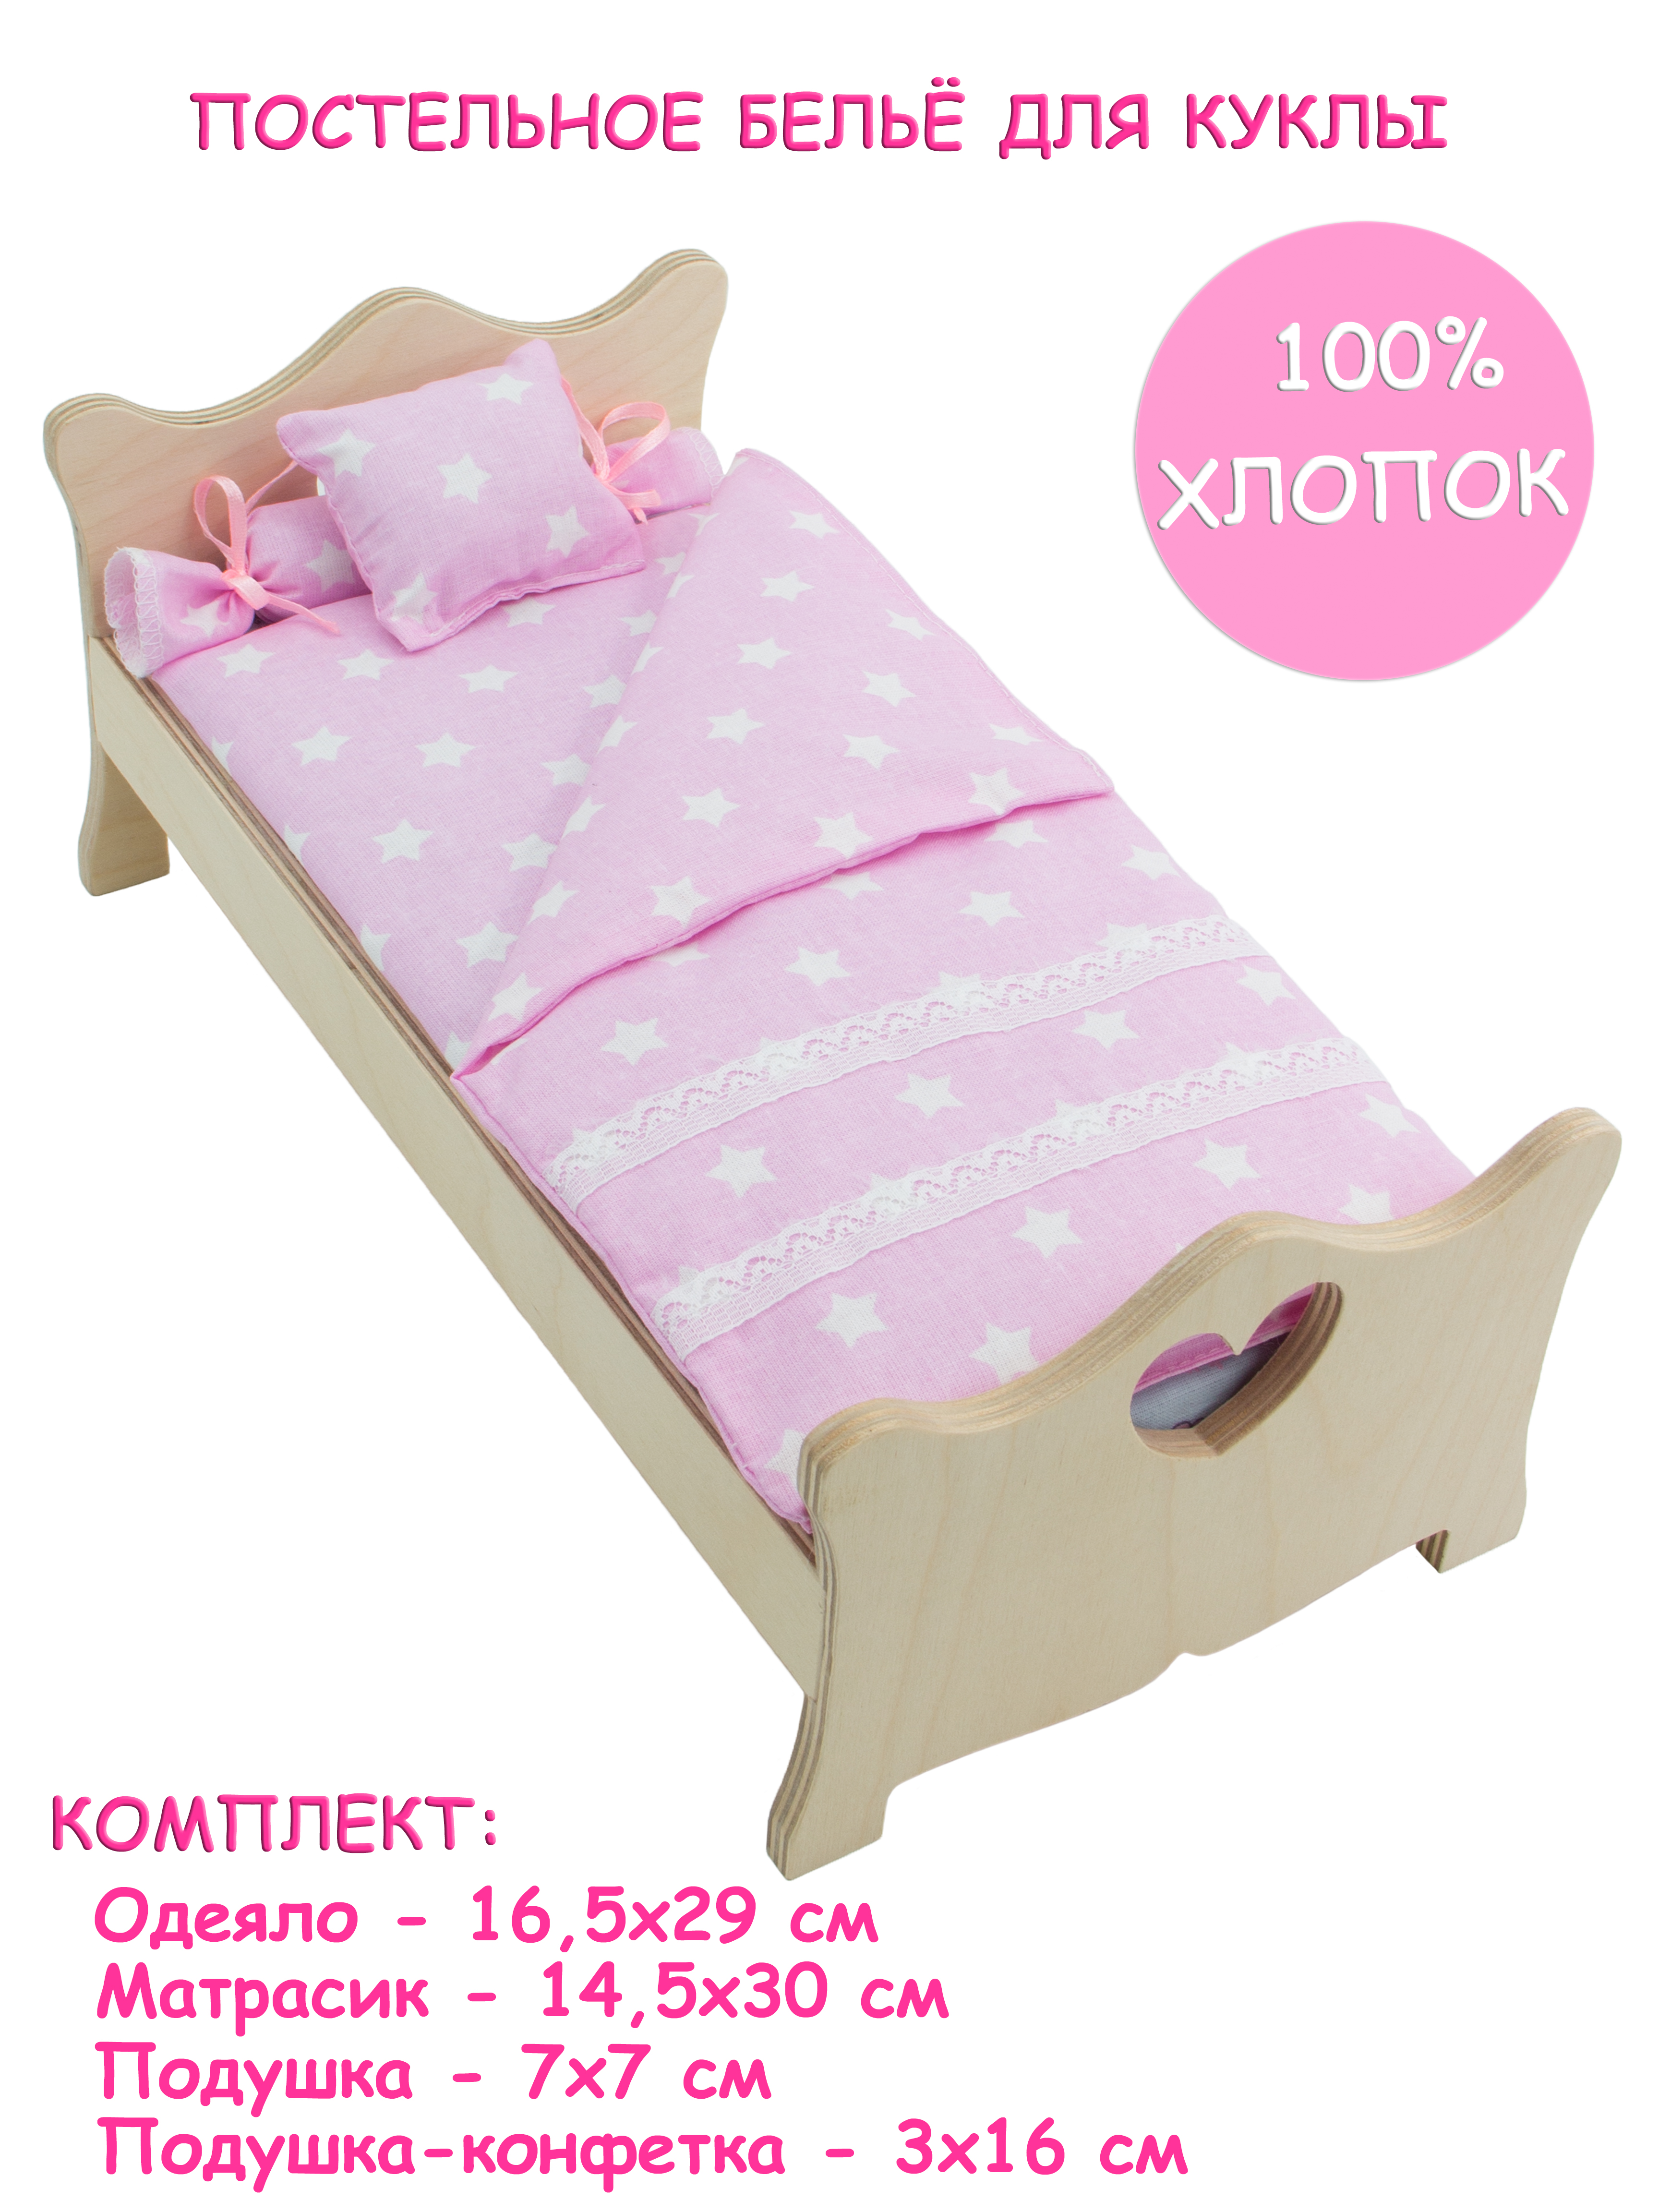 Комлпект постельного белья Модница для куклы 29 см светло-розовый 2002светло-розовый - фото 1